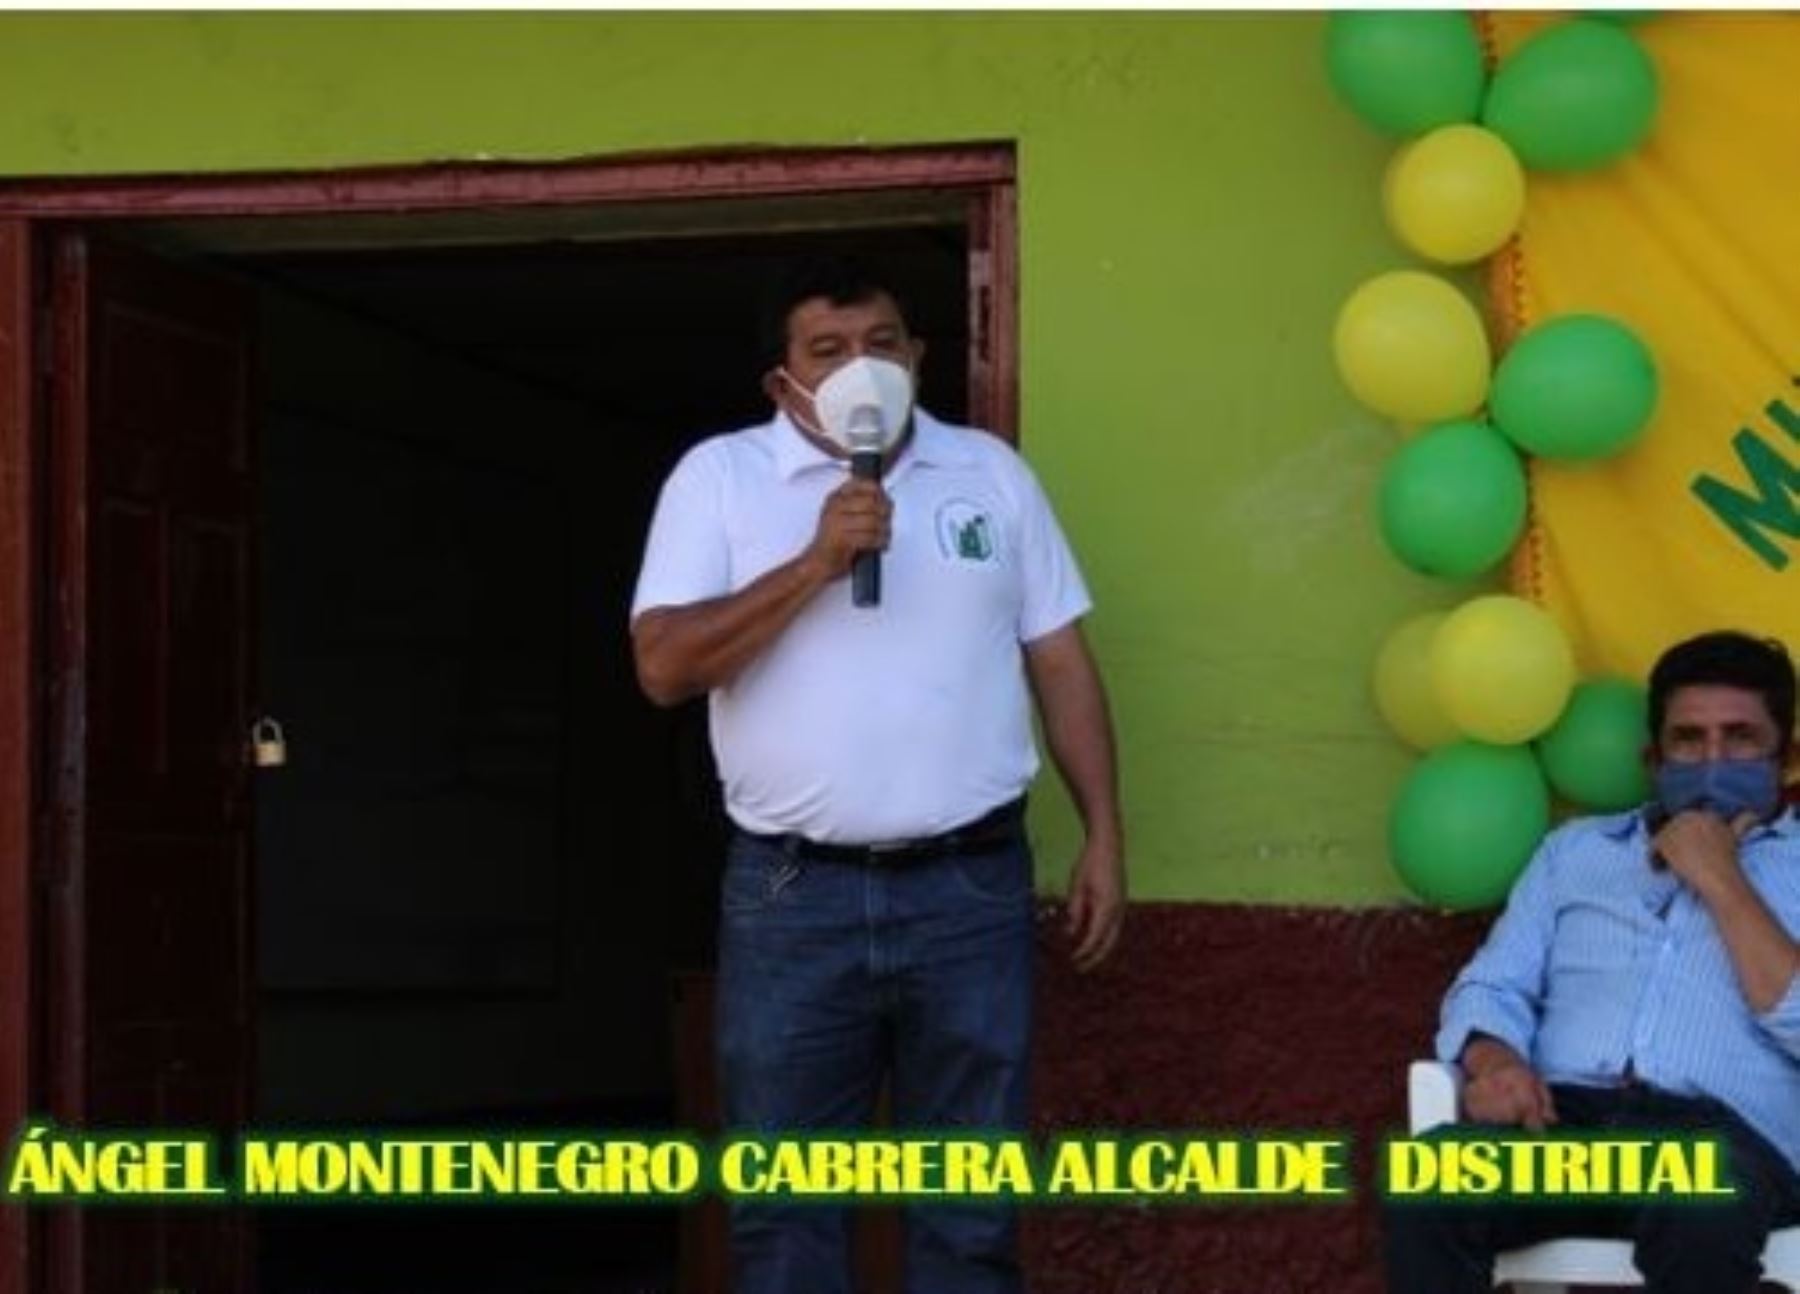 La Fiscalía Especializada en Delitos de Corrupción de Funcionarios de Lambayeque detuvo de manera preliminar a José Ángel Montenegro Cabrera, alcalde del distrito de Cayalluc, ubicado en Cajamarca. ANDINA/Difusión